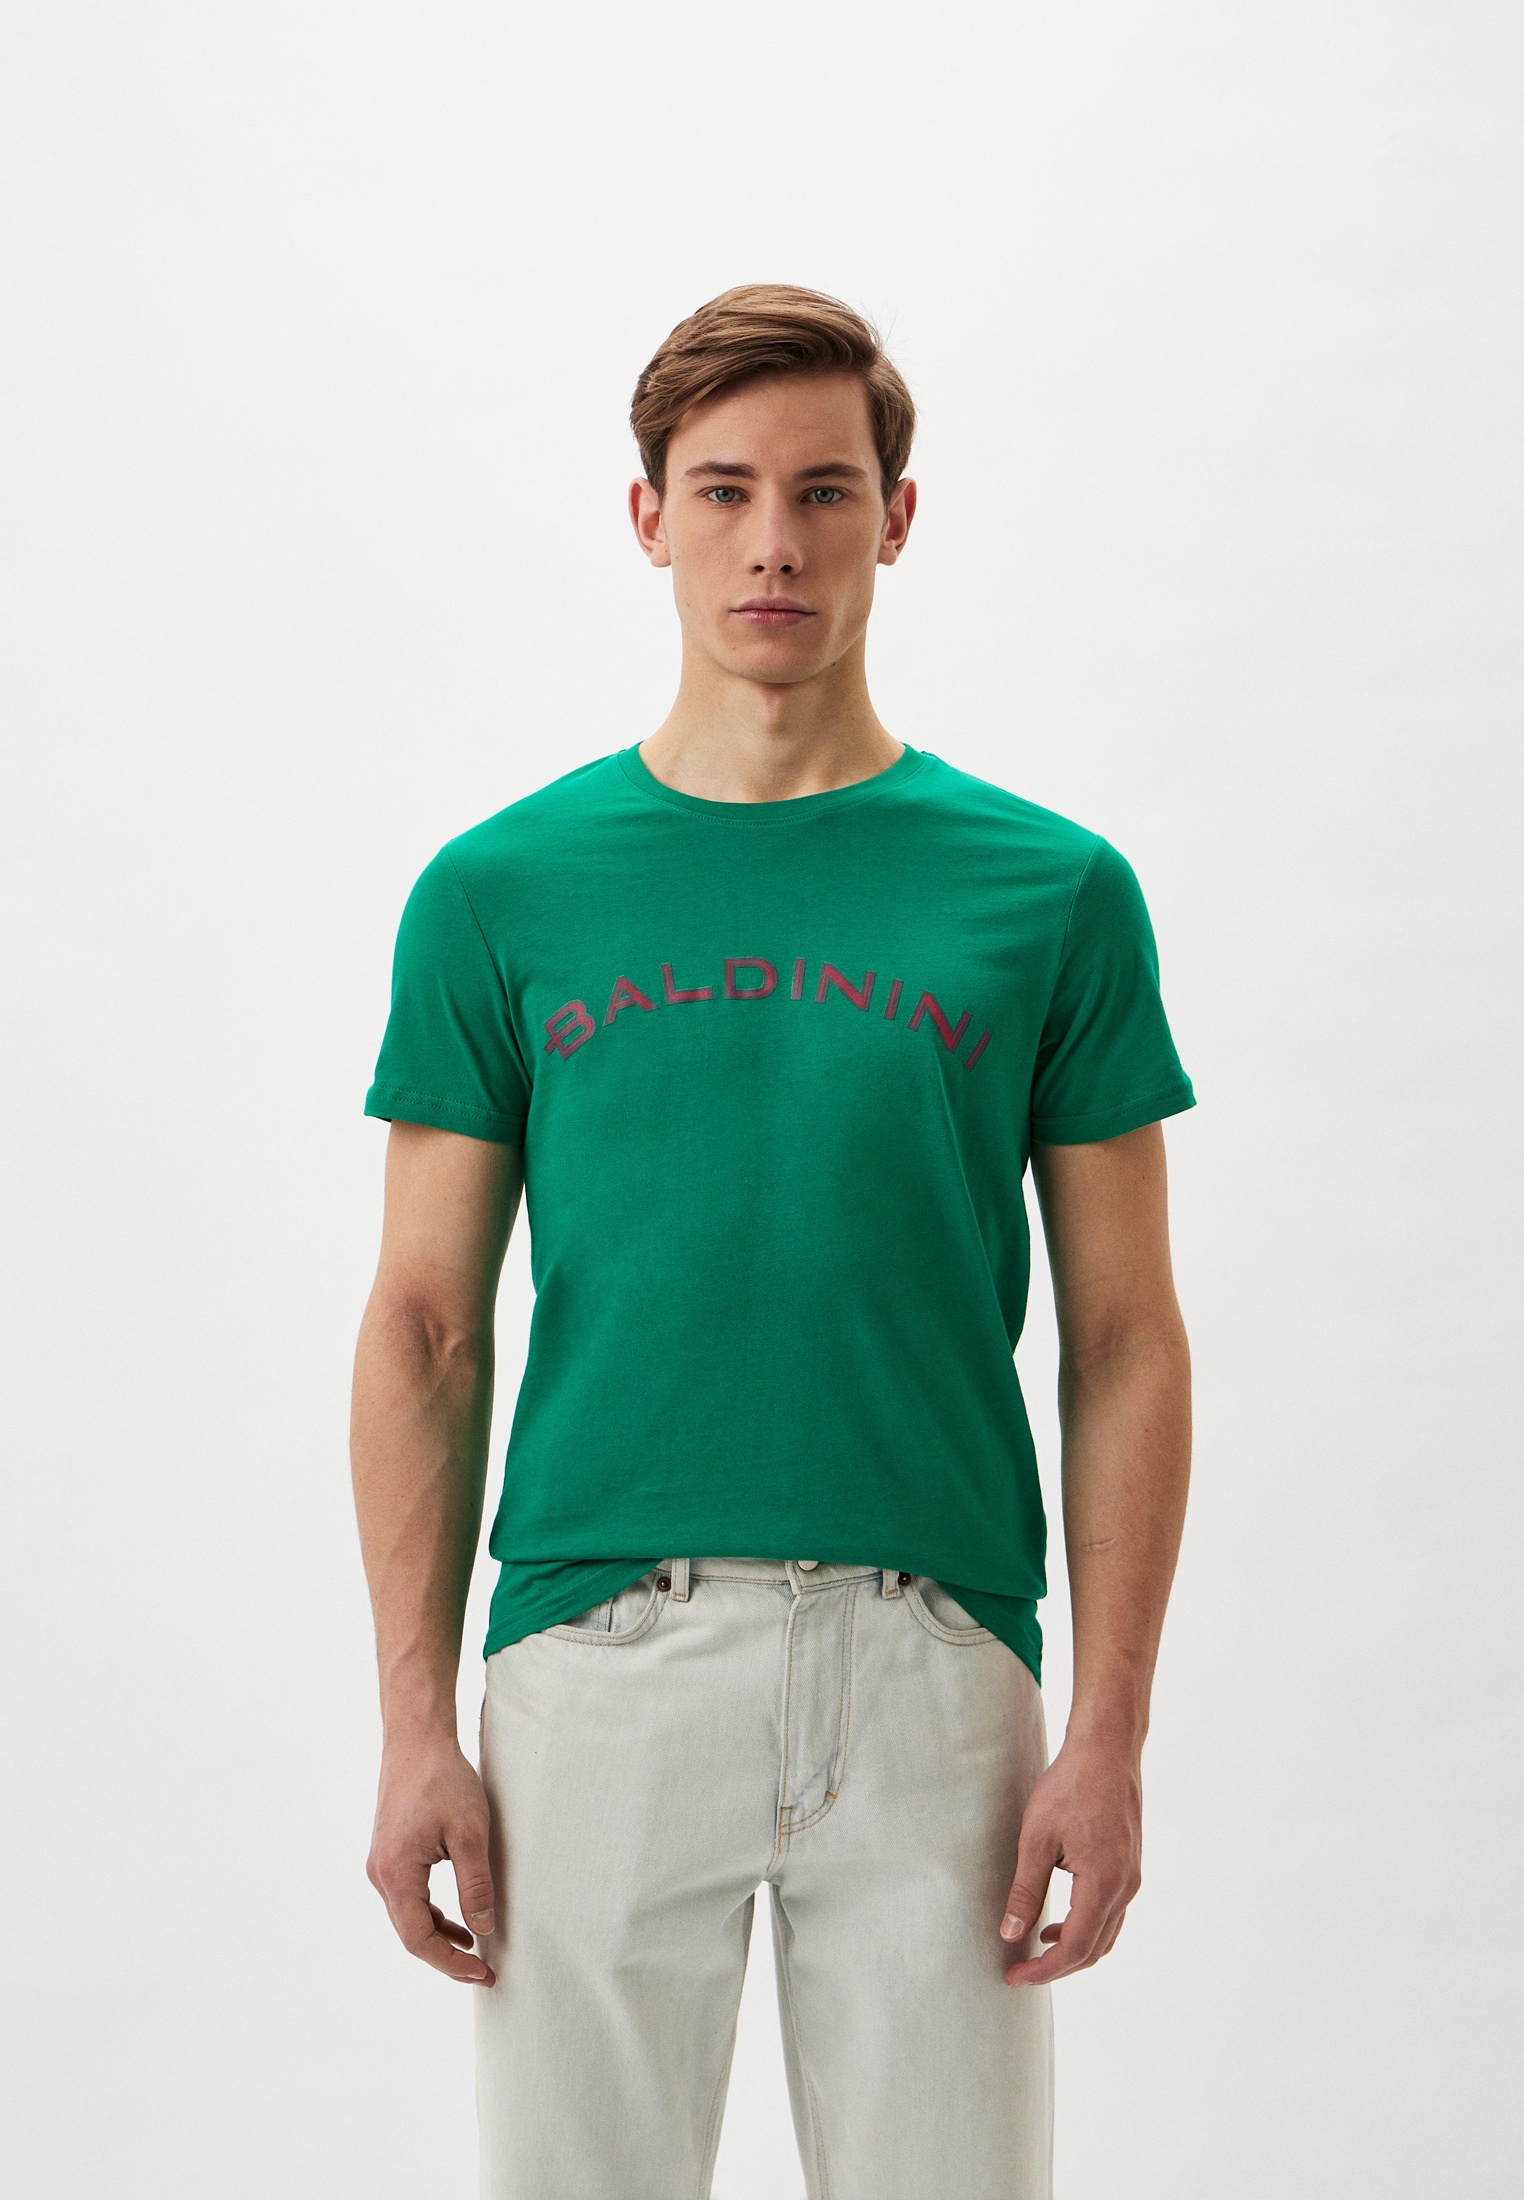 Мужская футболка Baldinini (Балдинини) B-OLM-M001: изображение 1